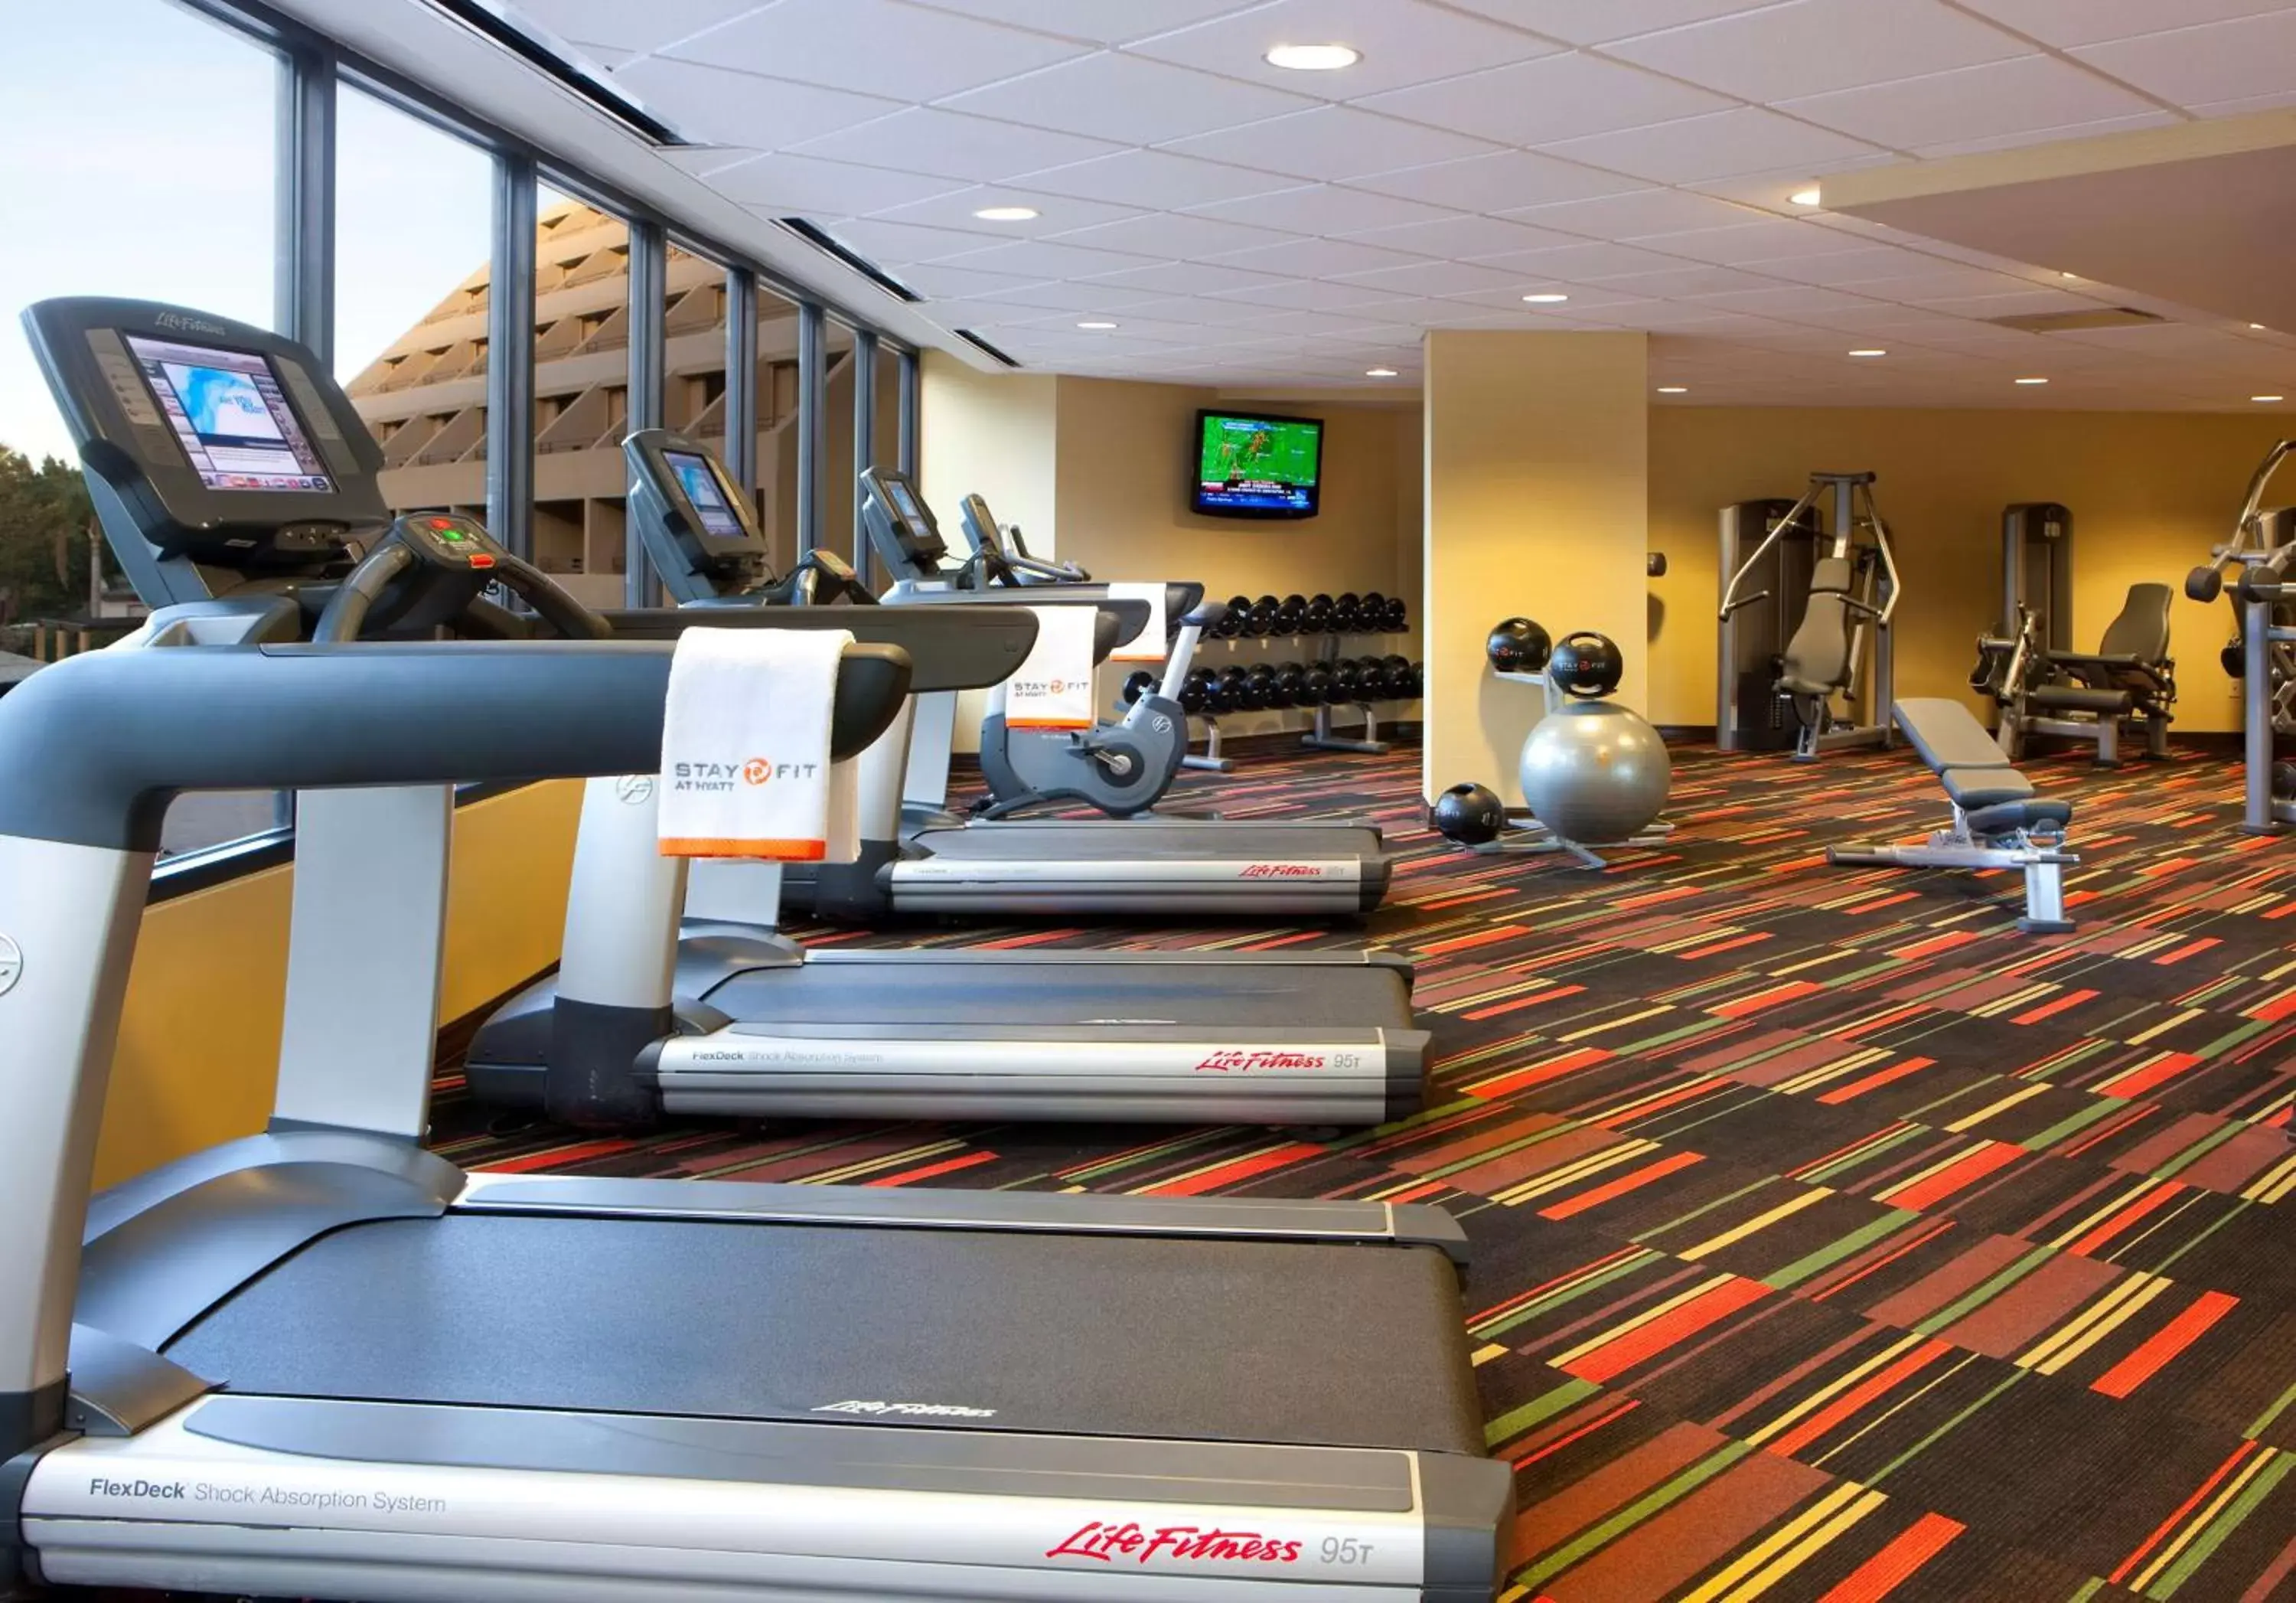 Fitness centre/facilities, Fitness Center/Facilities in Hyatt Palm Springs